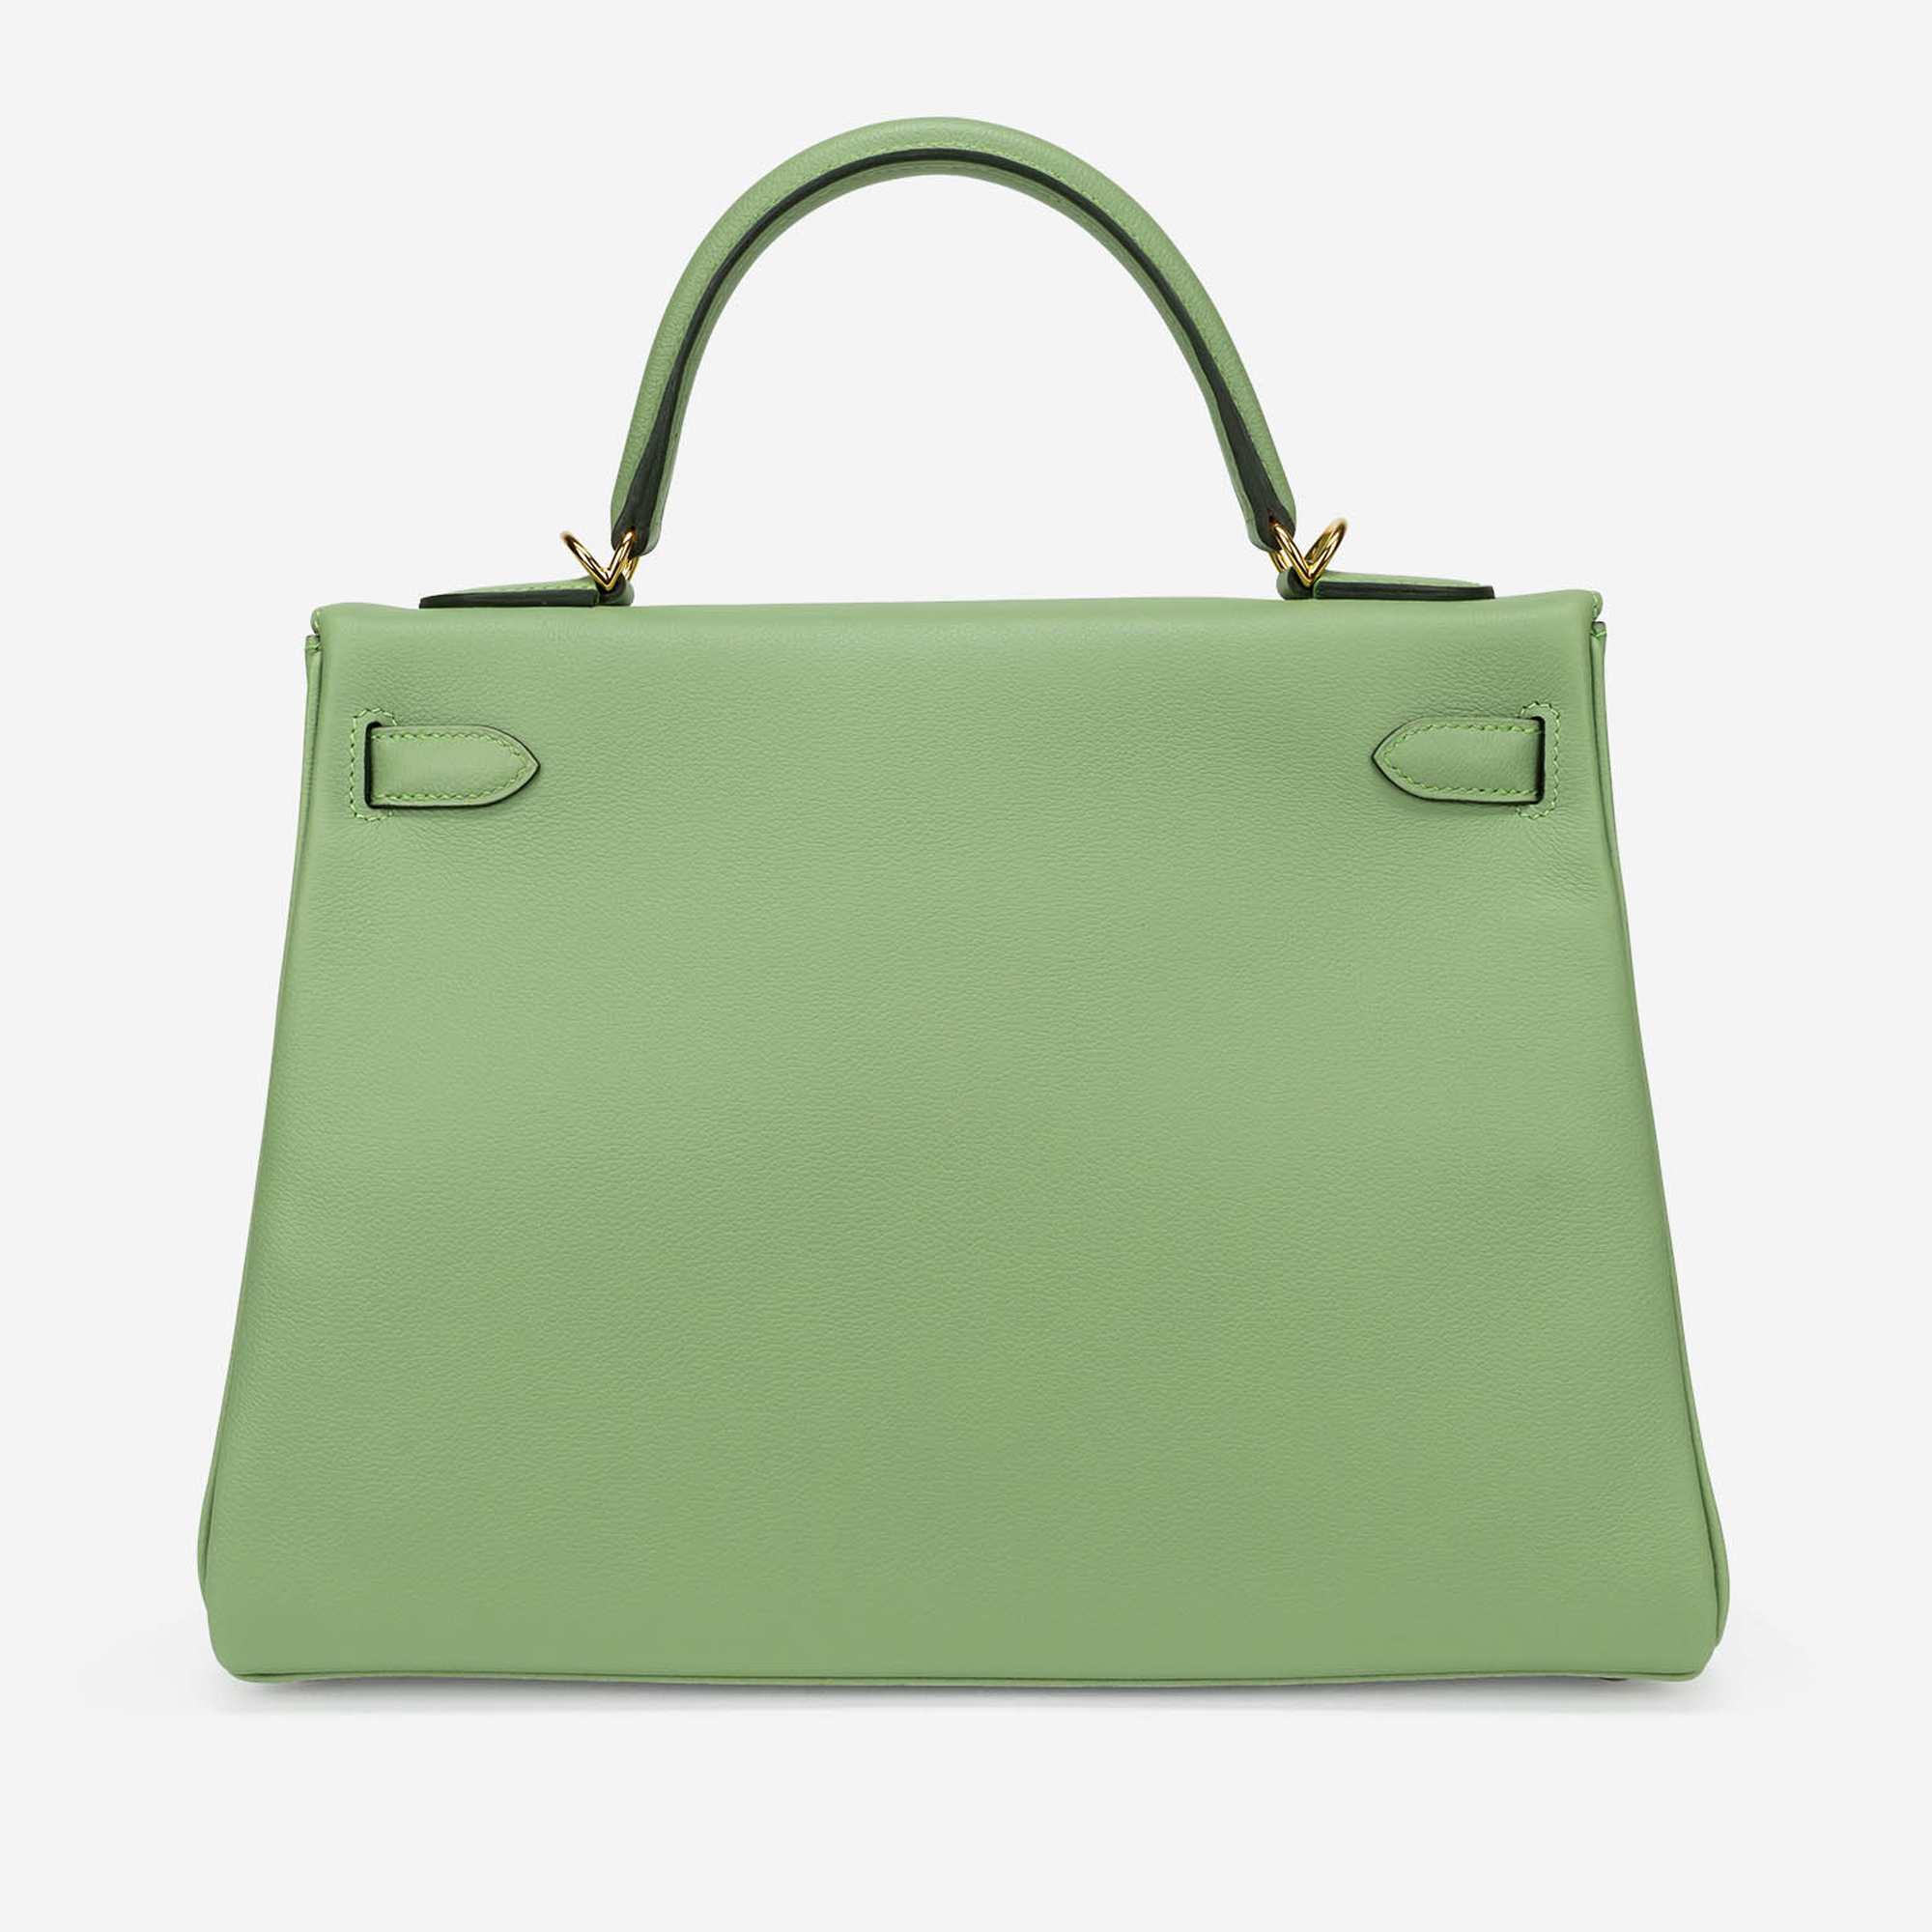 Gebrauchte Hermès Tasche Kelly 32 Evercolor Vert Criquet Grün | Verkaufen Sie Ihre Designer-Tasche auf Saclab.com